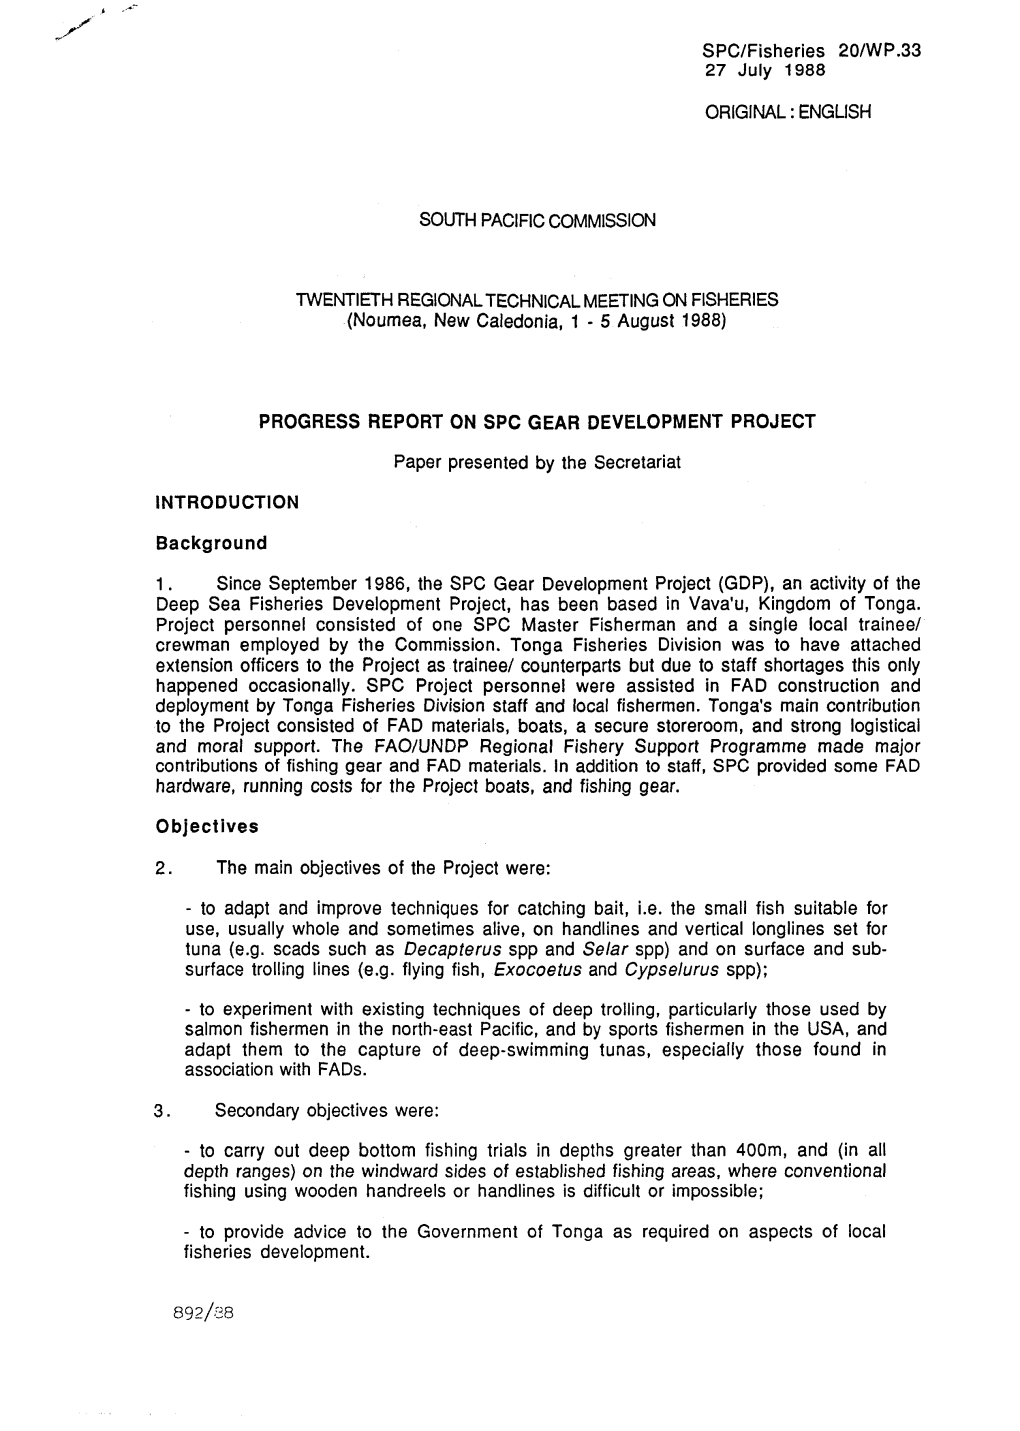 Progress Report on Spc Gear Development Project